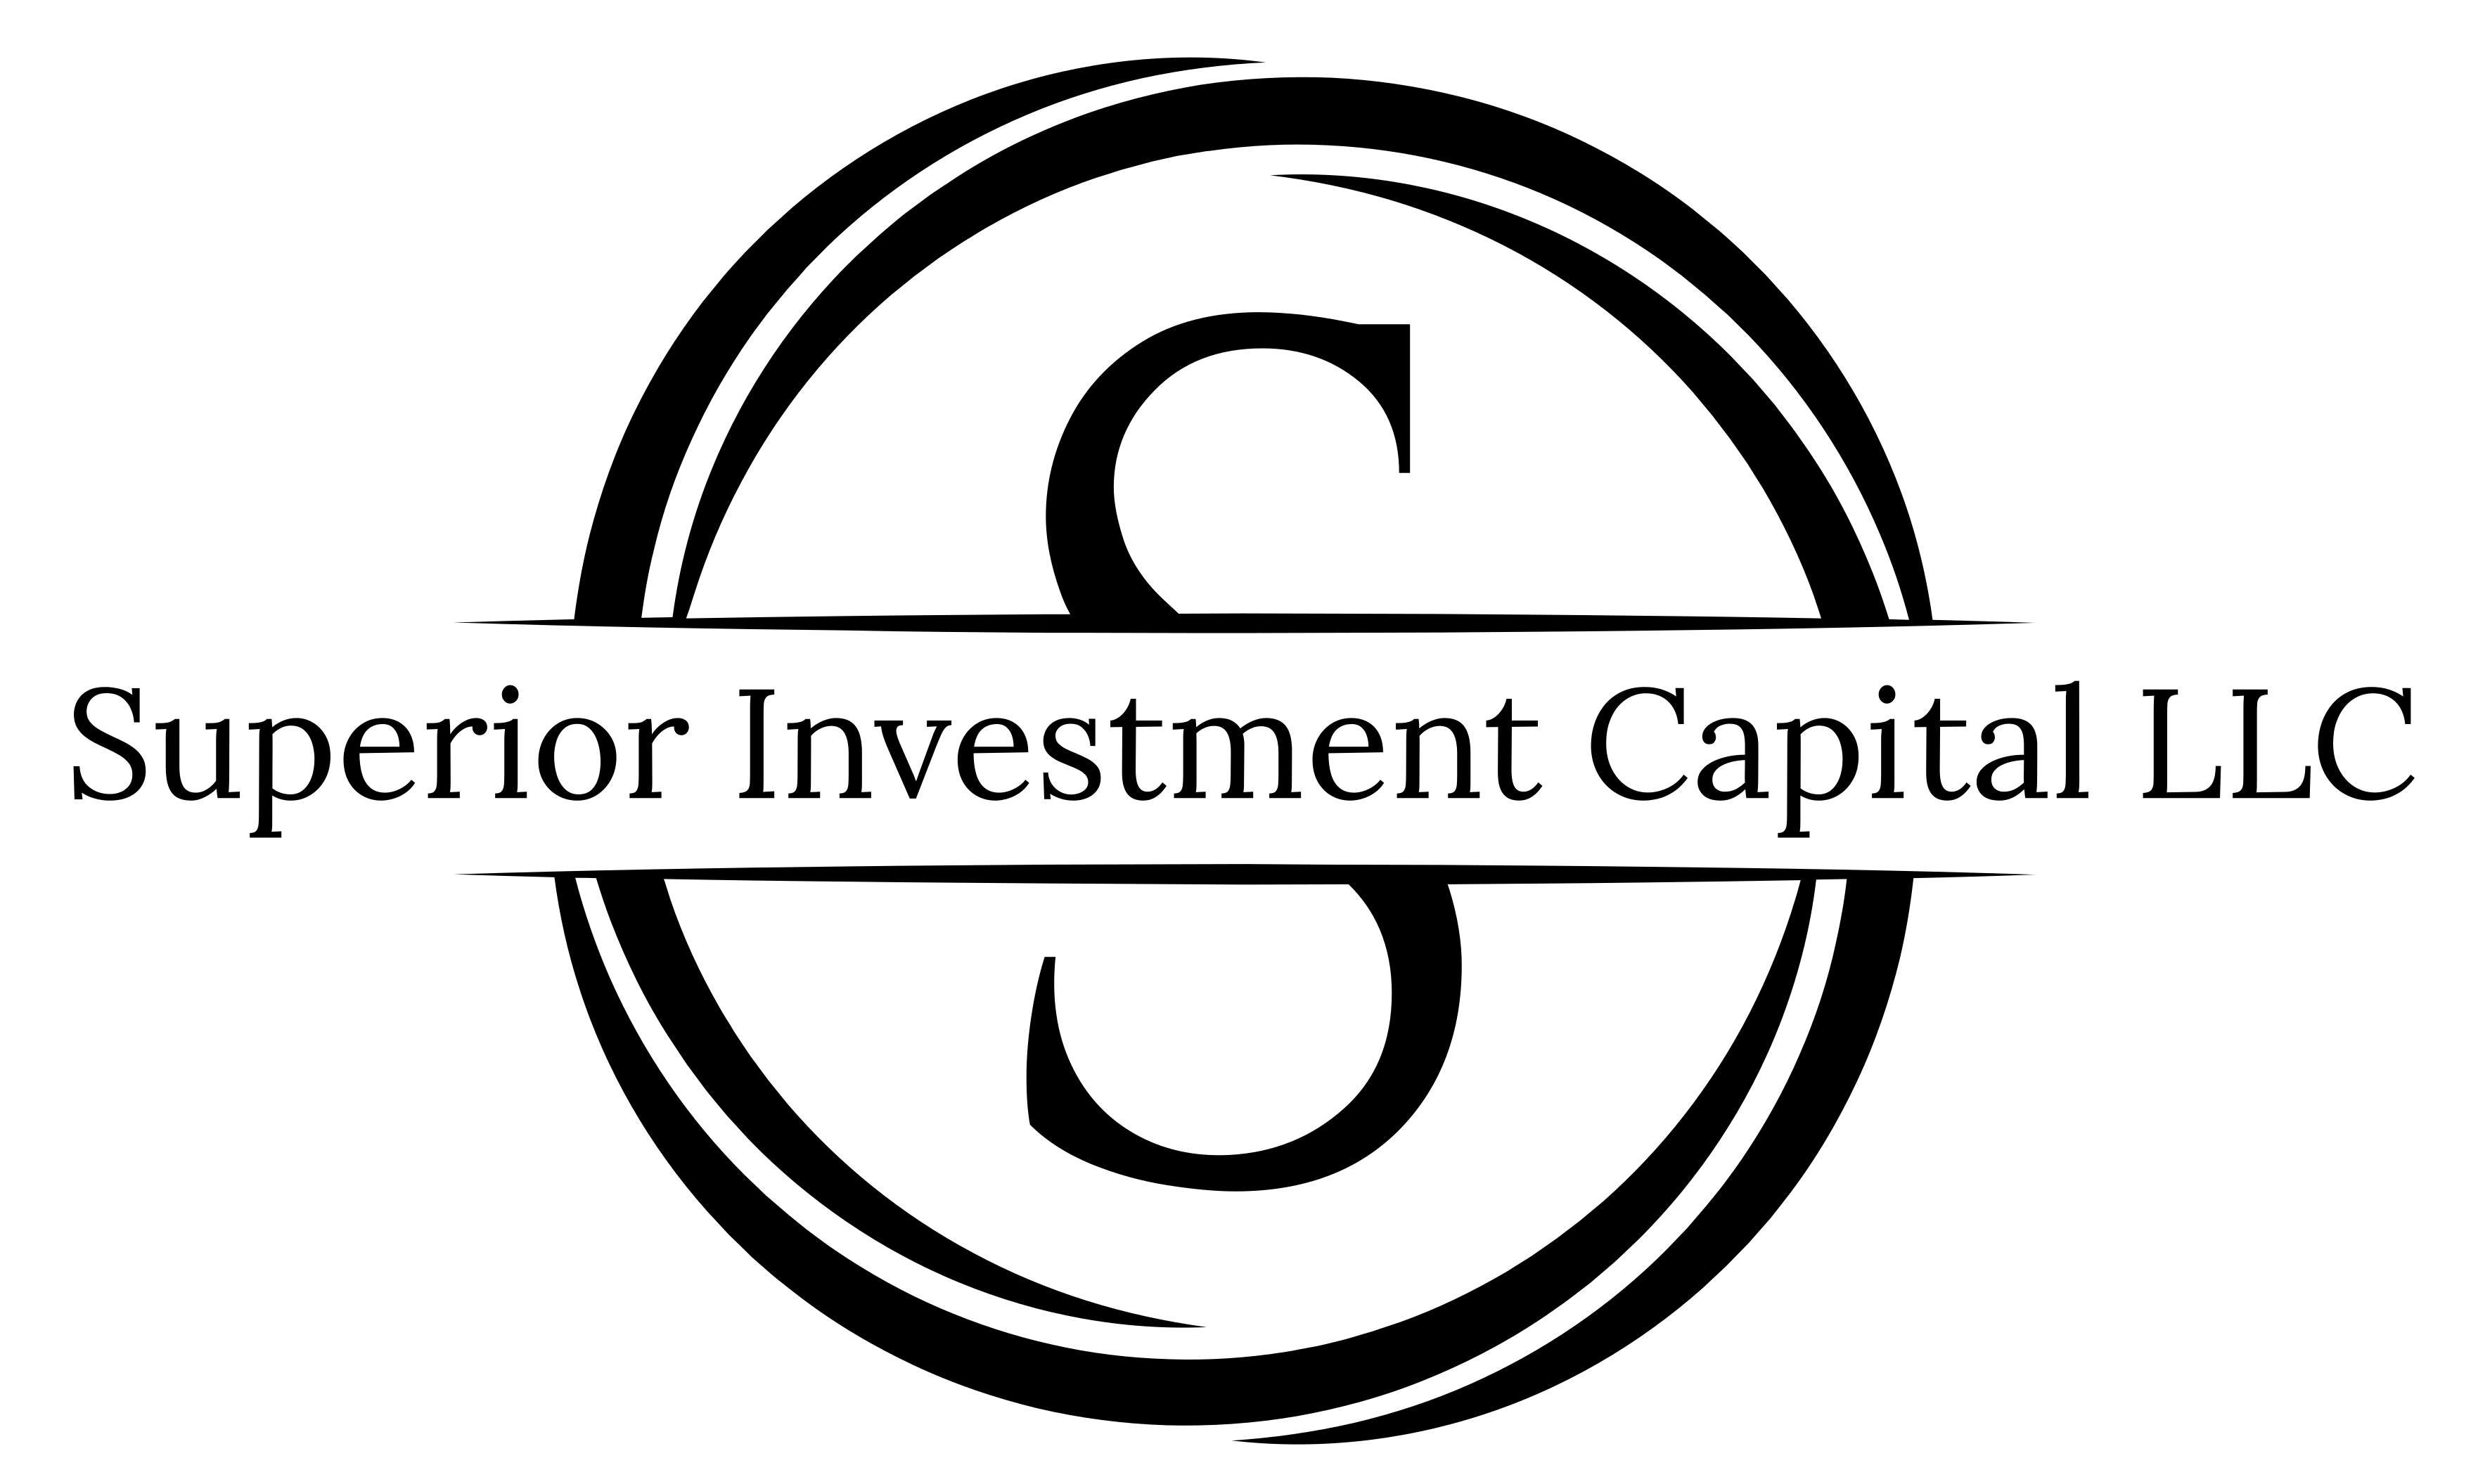 Superior Investment Capital LLC